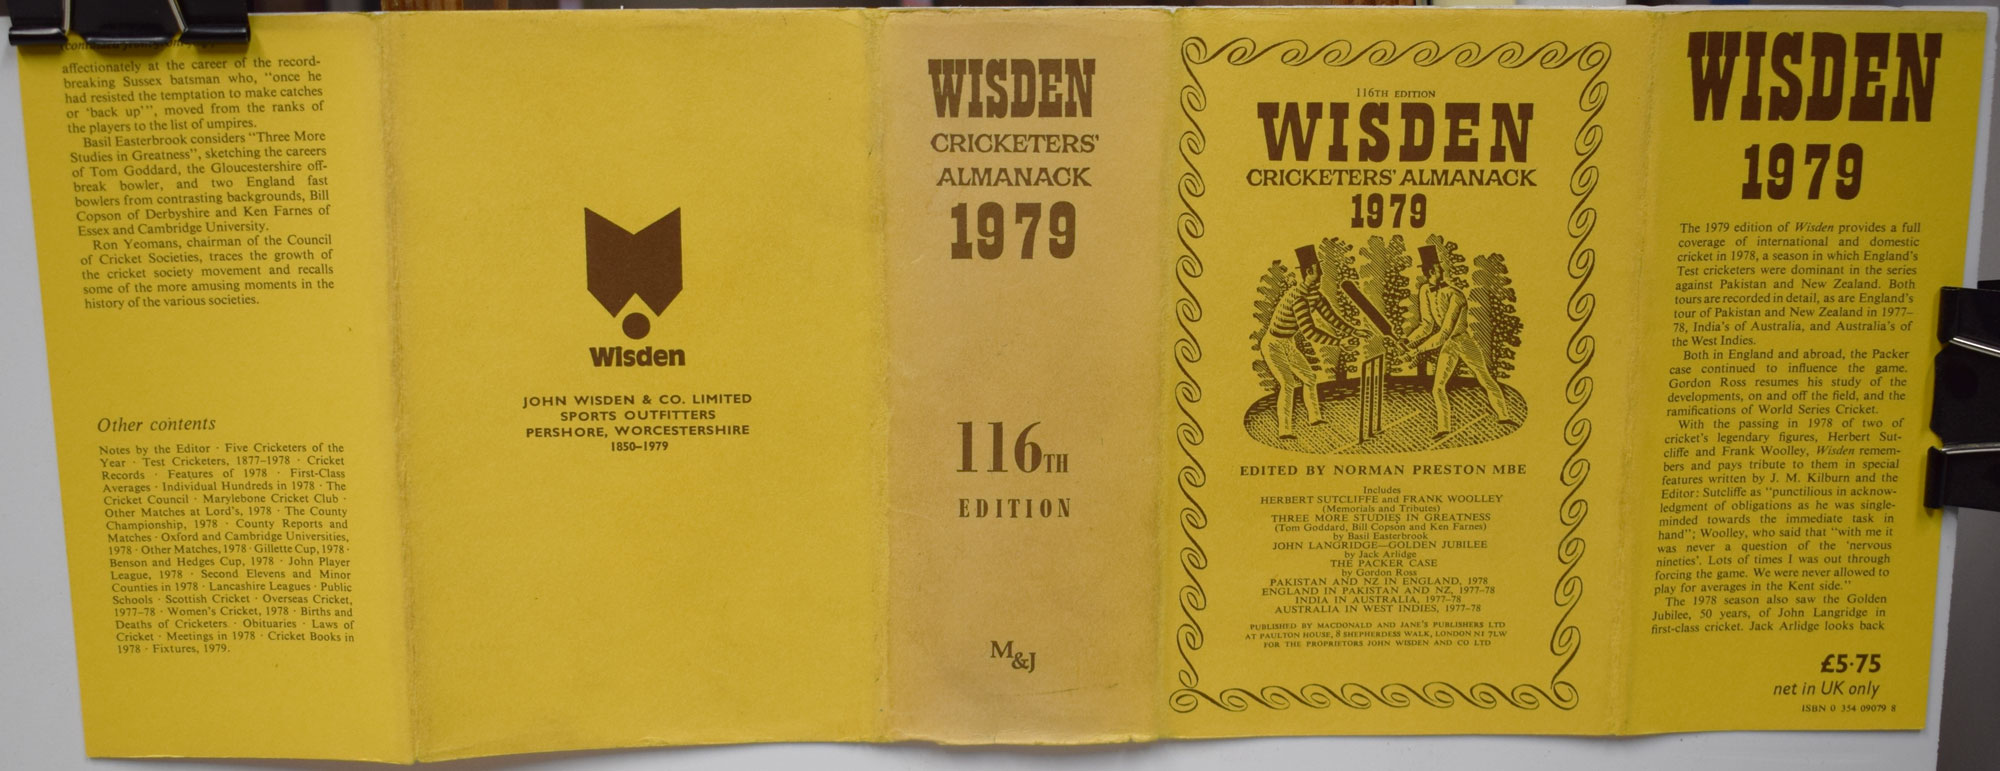 Wisden Cricketers' Almanack 1979 (116th edition)